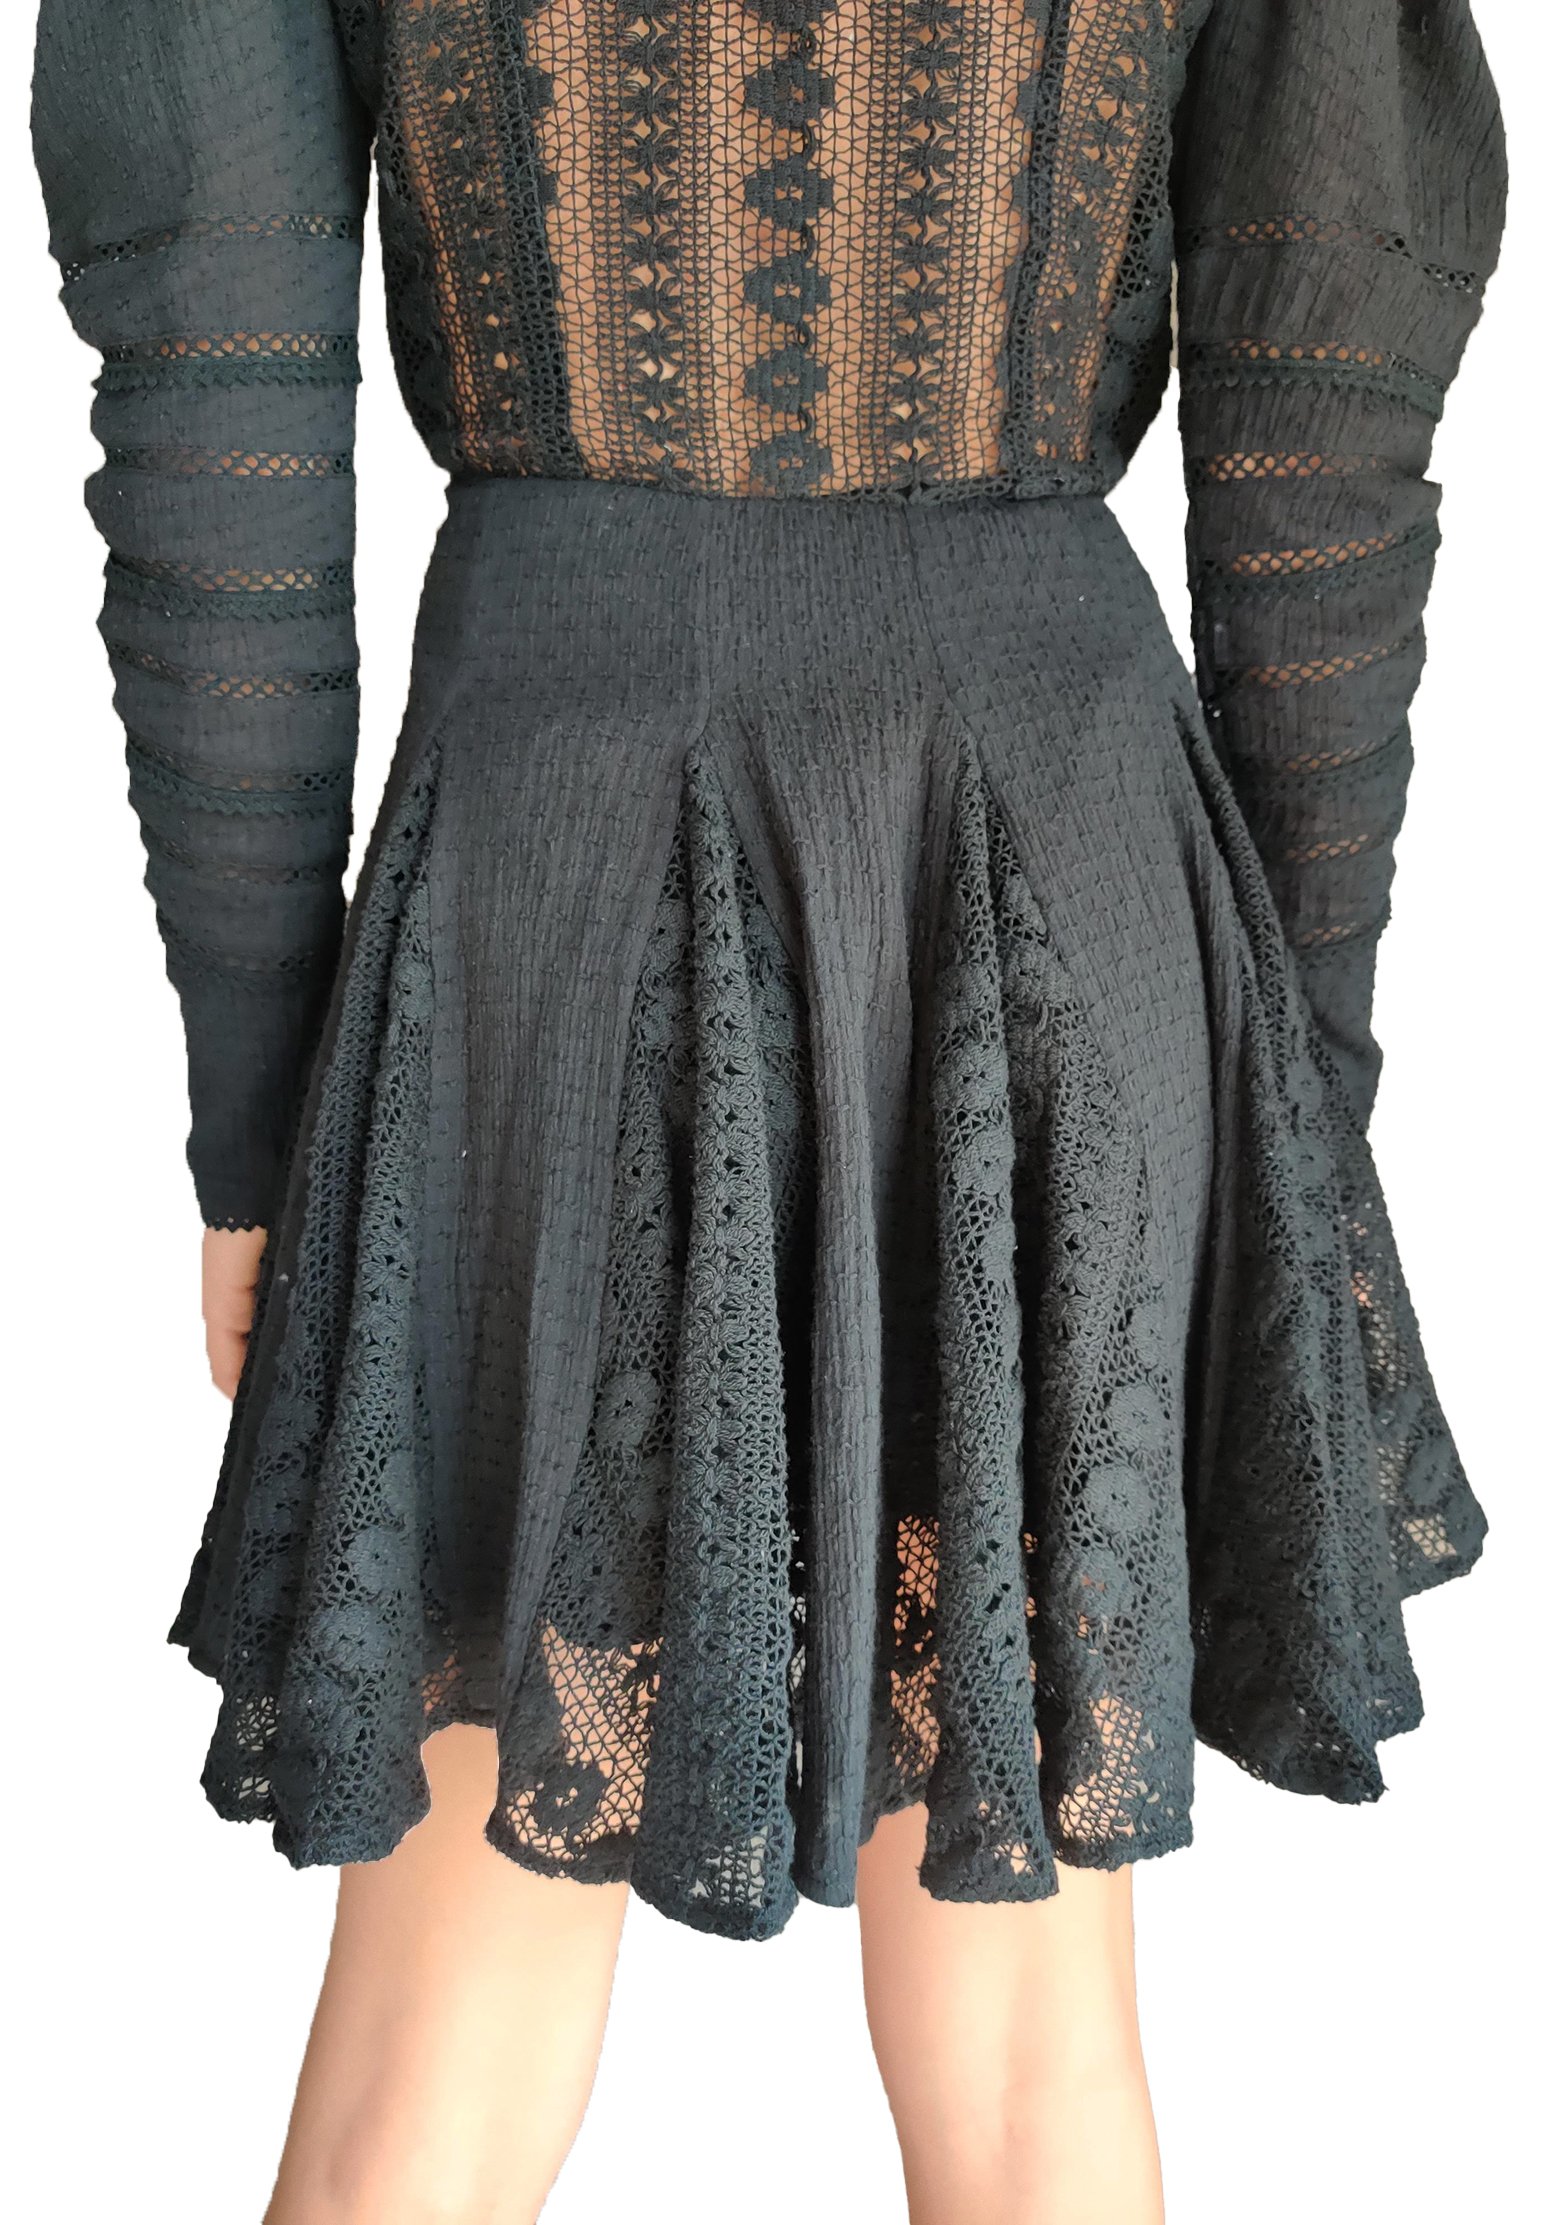 Dress HEMANT&NANDITA Color: black (Code: 760) in online store Allure